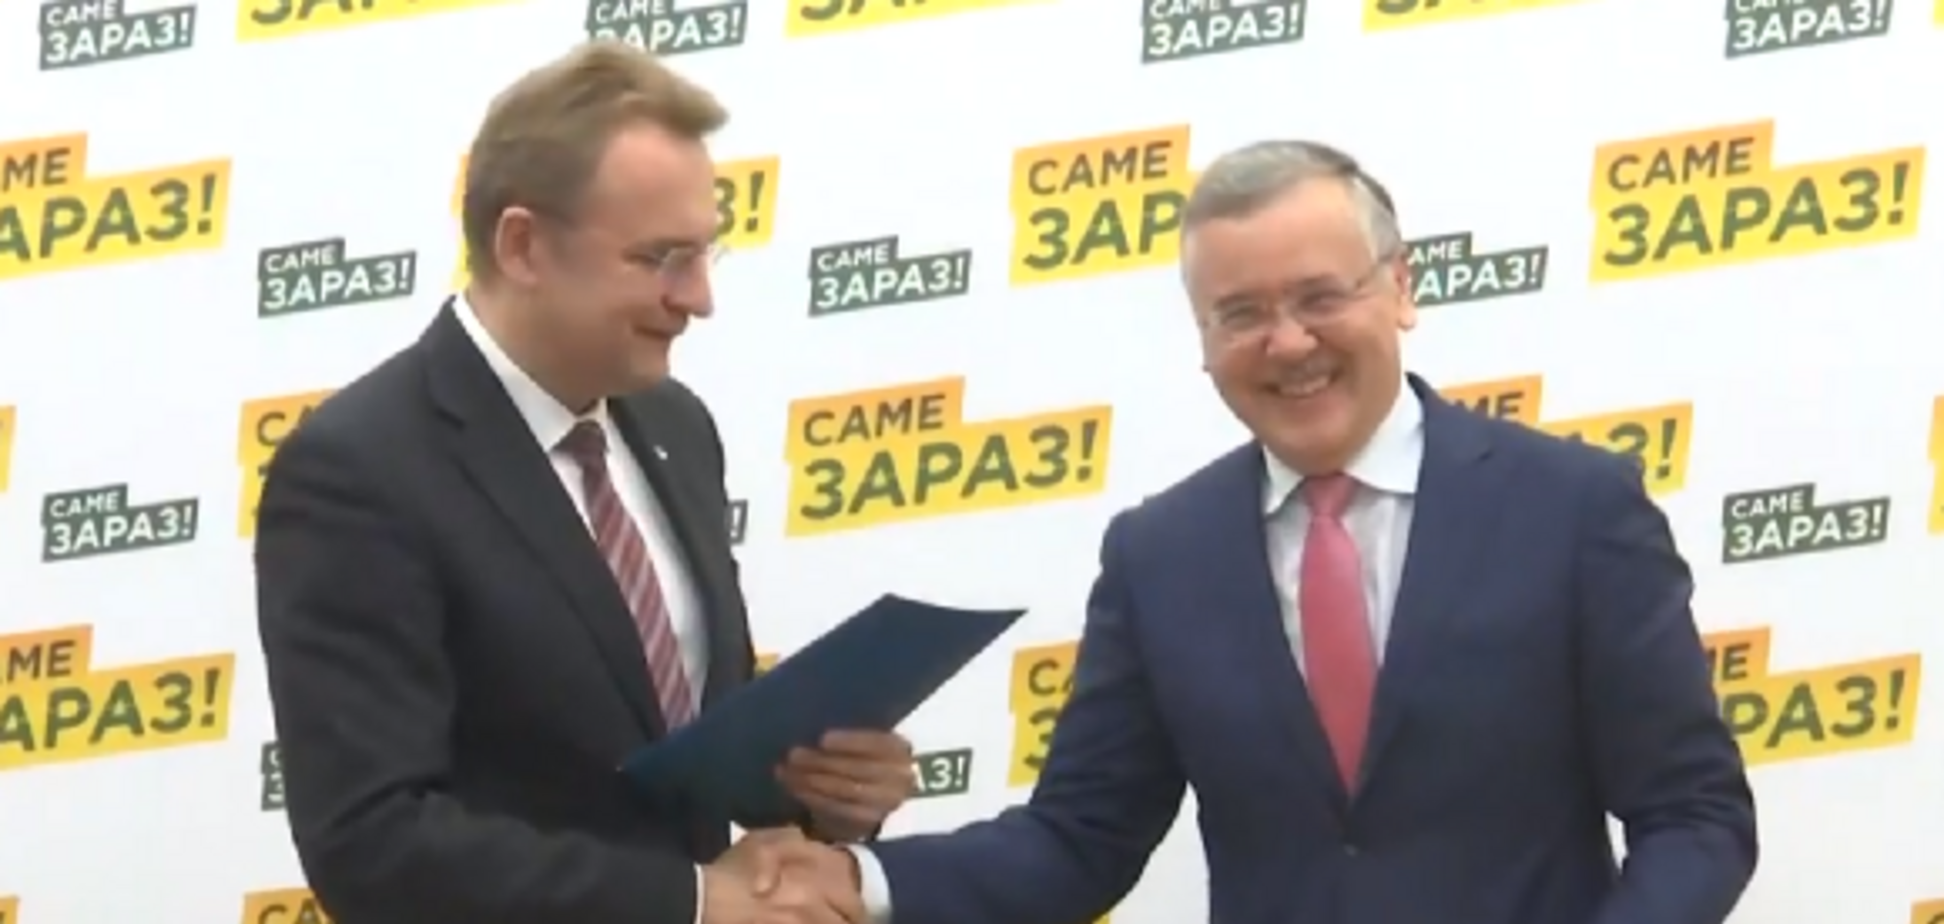 Садовый и Гриценко подписали соглашение об объединении усилий на выборах президента Украины